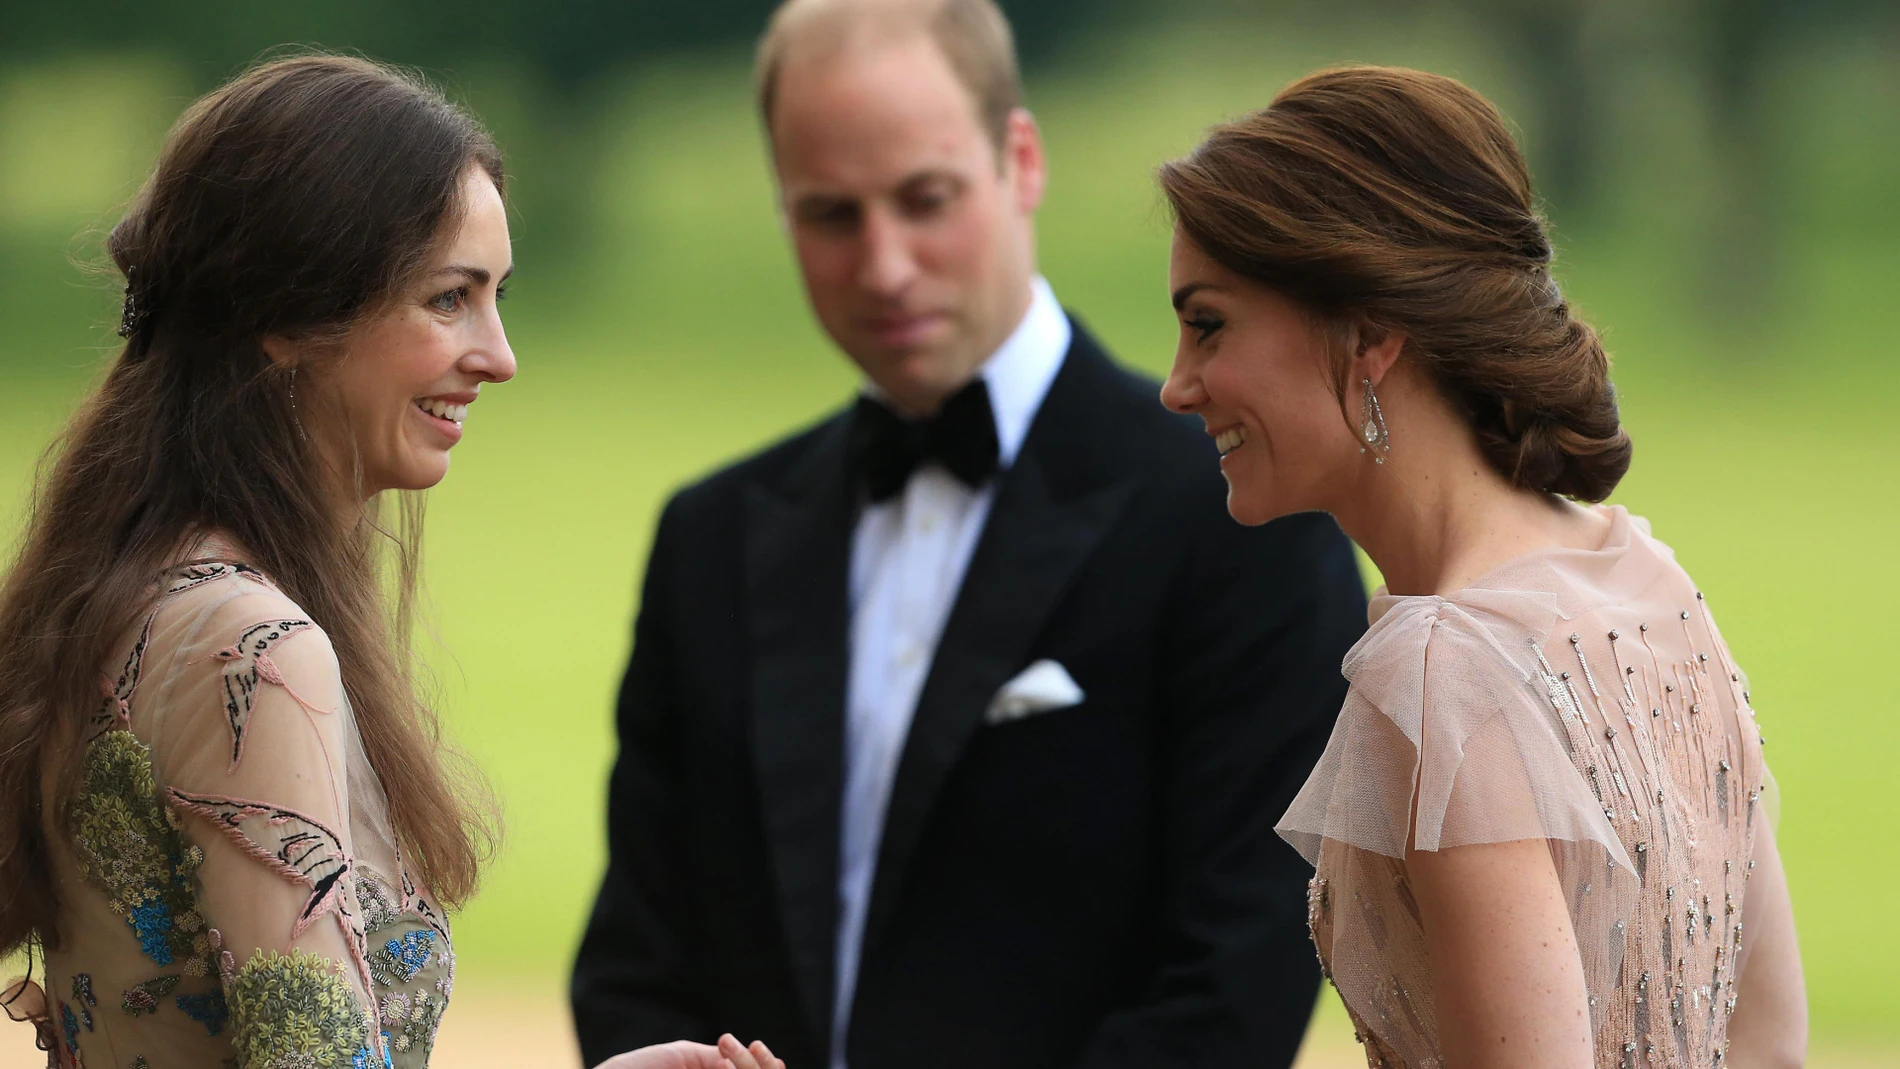 Eran íntimos amigos: en la imagen el Príncipe William, Kate Middleton y Rose Hanbury.